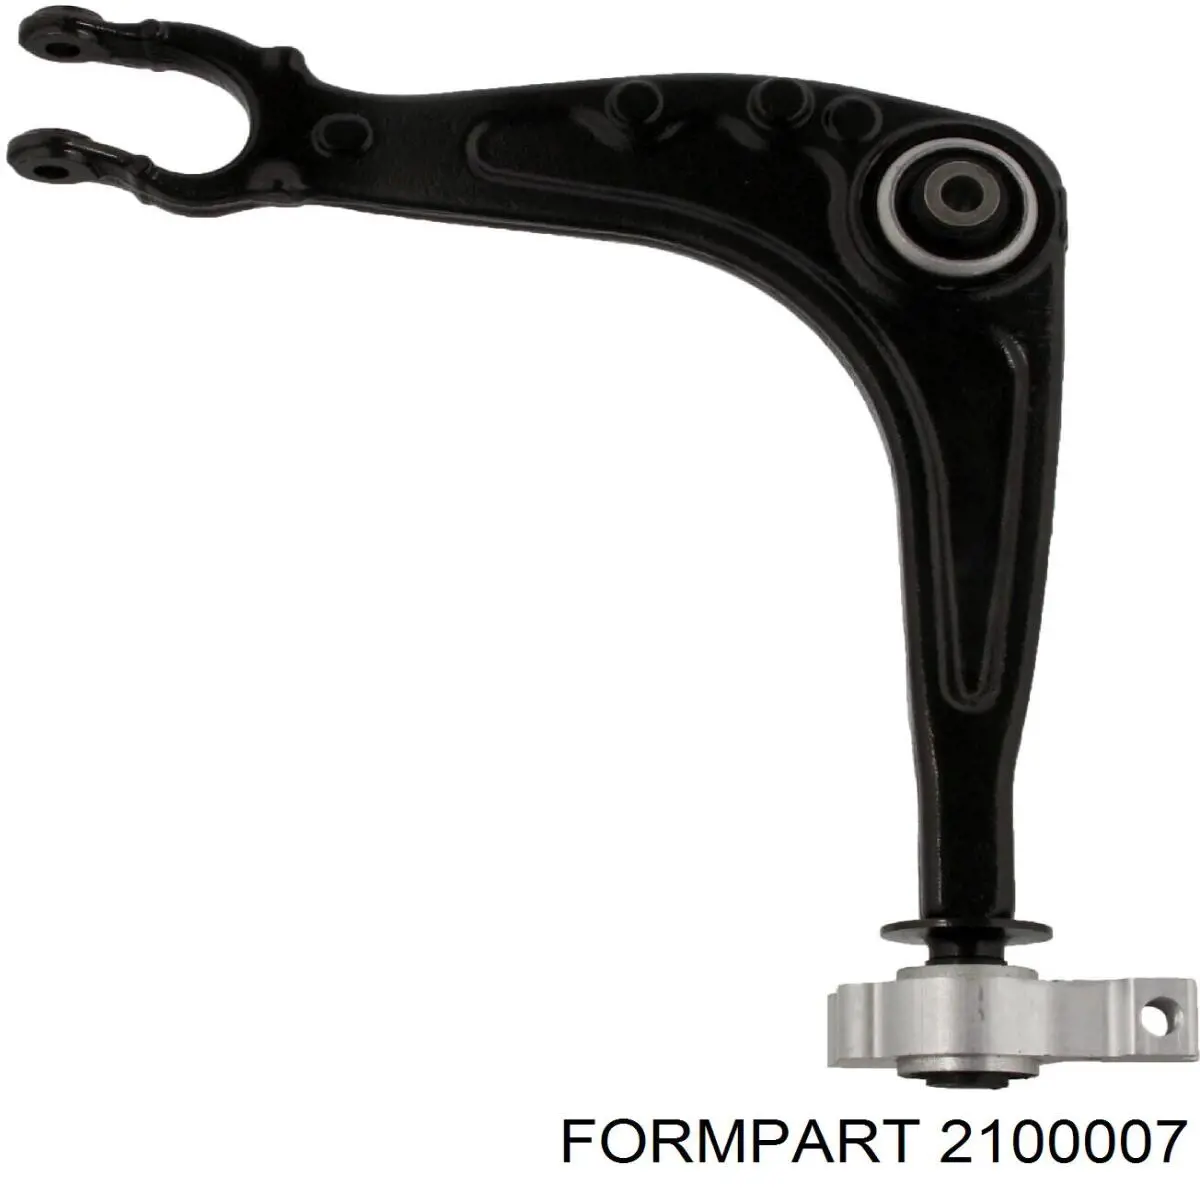 2100007 Formpart/Otoform silentblock de suspensión delantero inferior